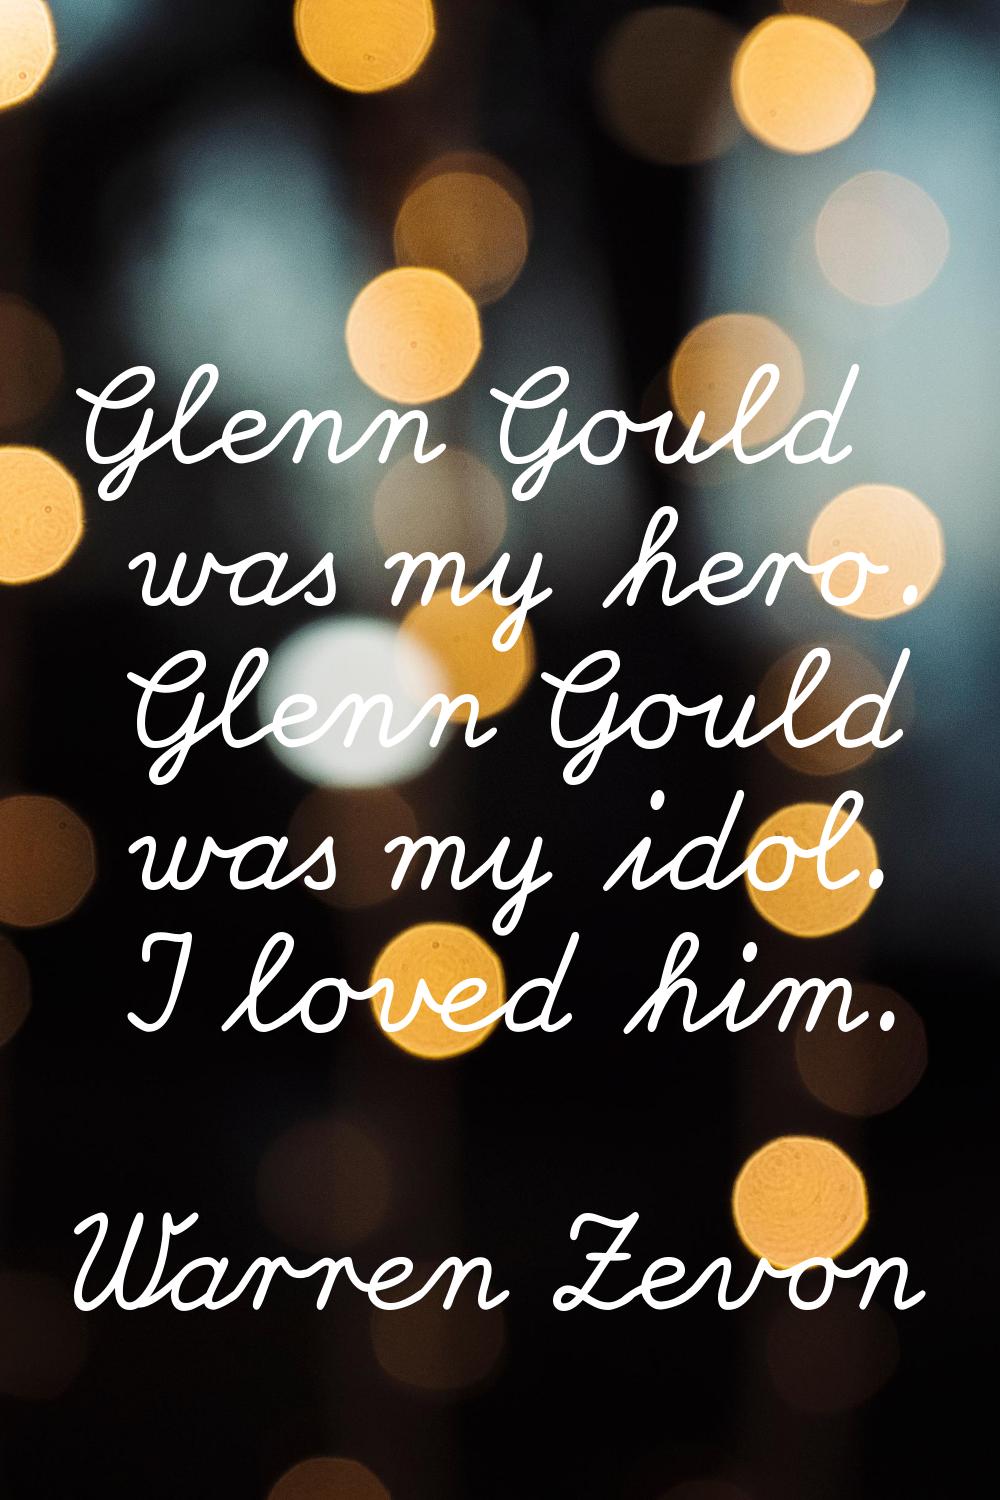 Glenn Gould was my hero. Glenn Gould was my idol. I loved him.